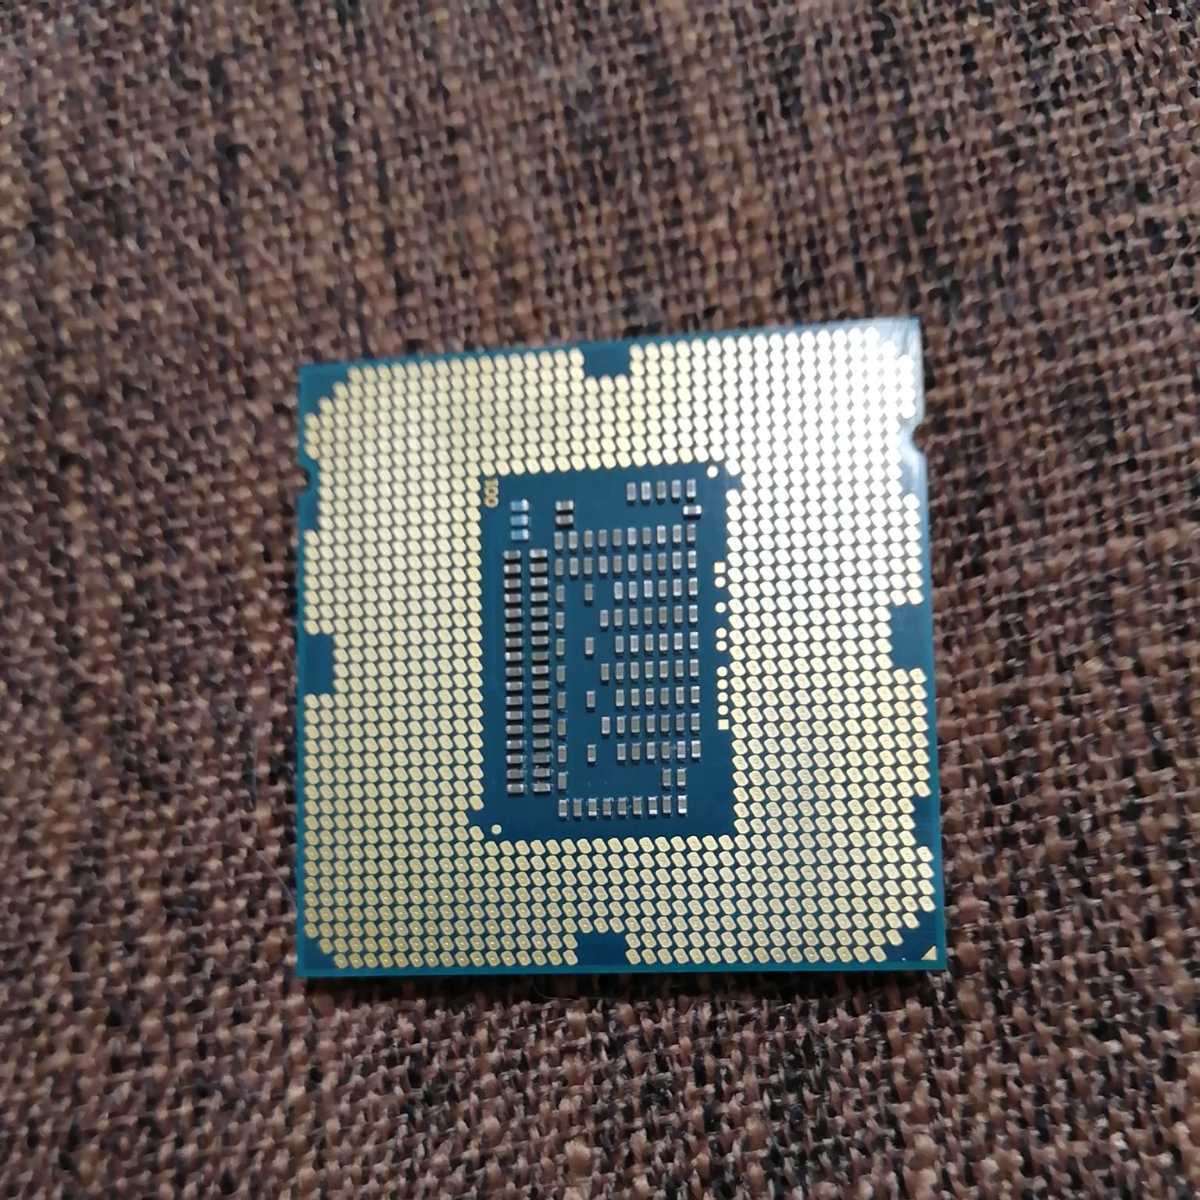 インテル Intel Core i7 3770k 3.50GHZ pc解体ジャンク品(Core i7 